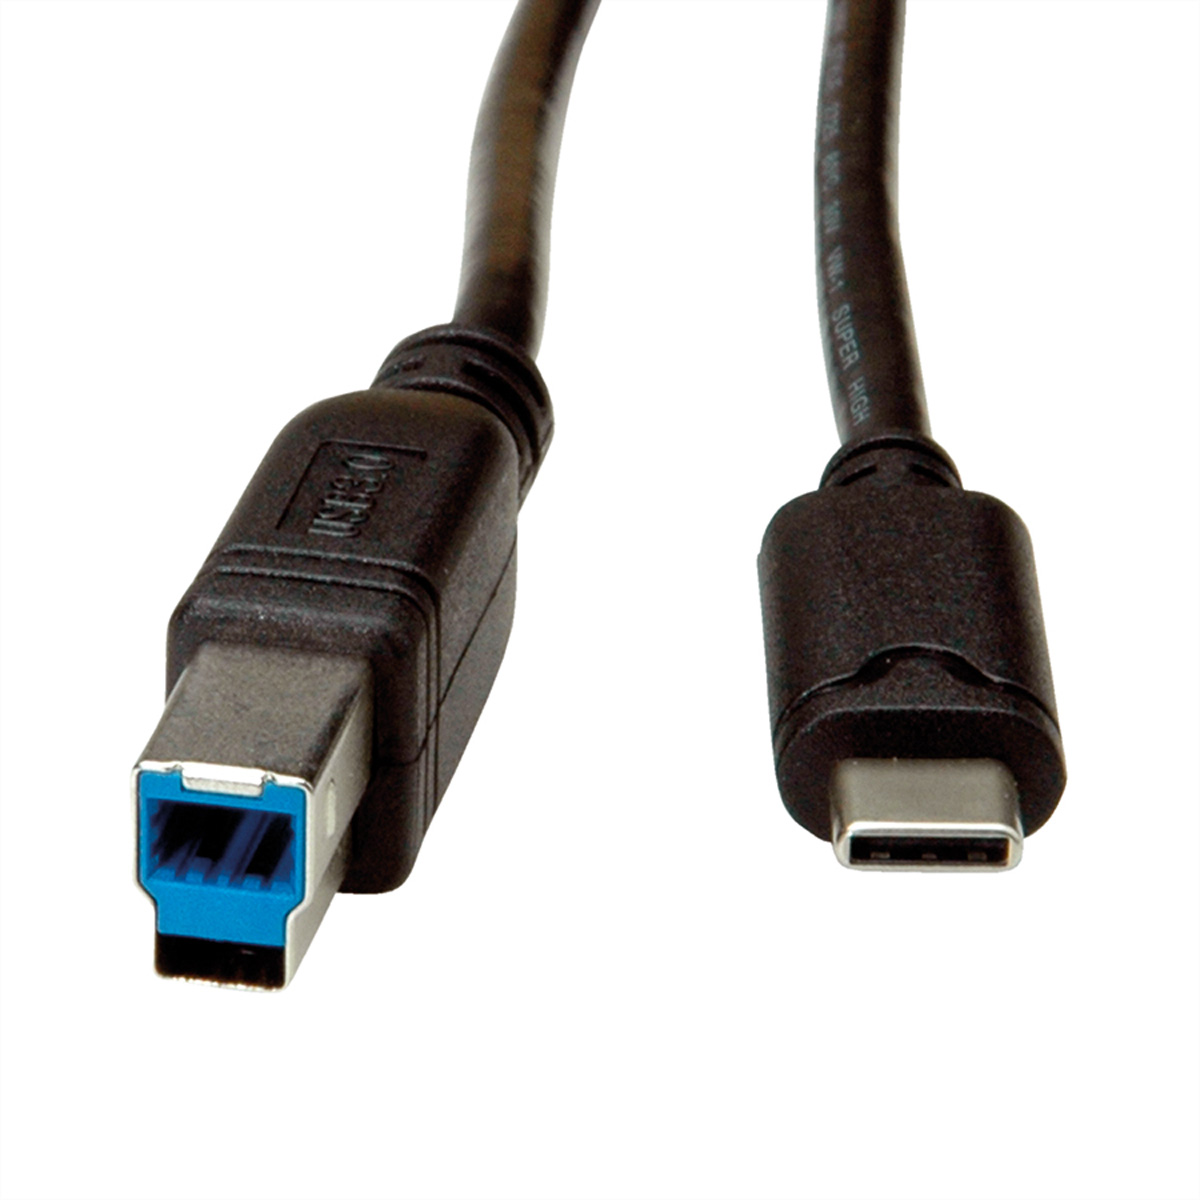 3.2 1 Kabel, USB ROLINE C-B, USB Gen Kabel ST/ST 3.2